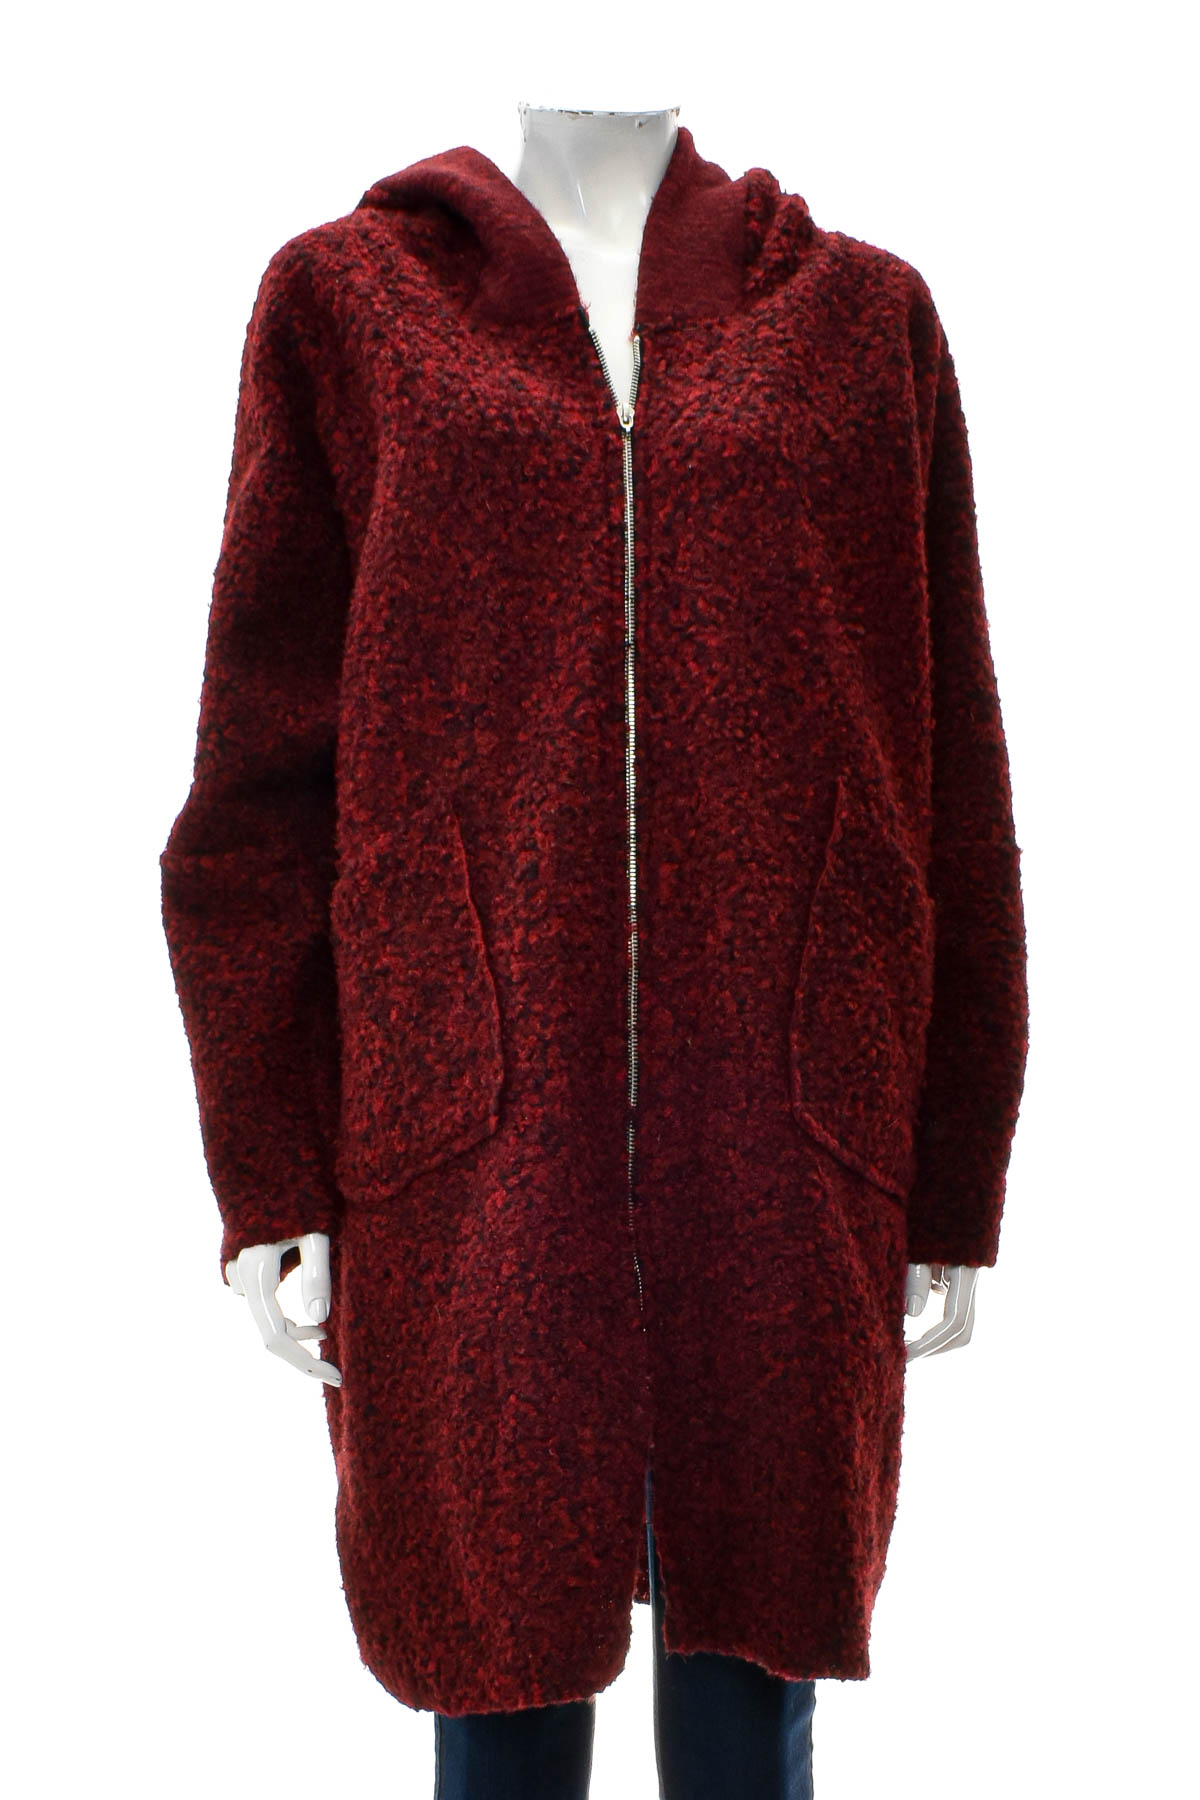 Γυναικείο παλτό - RM Collection - 0